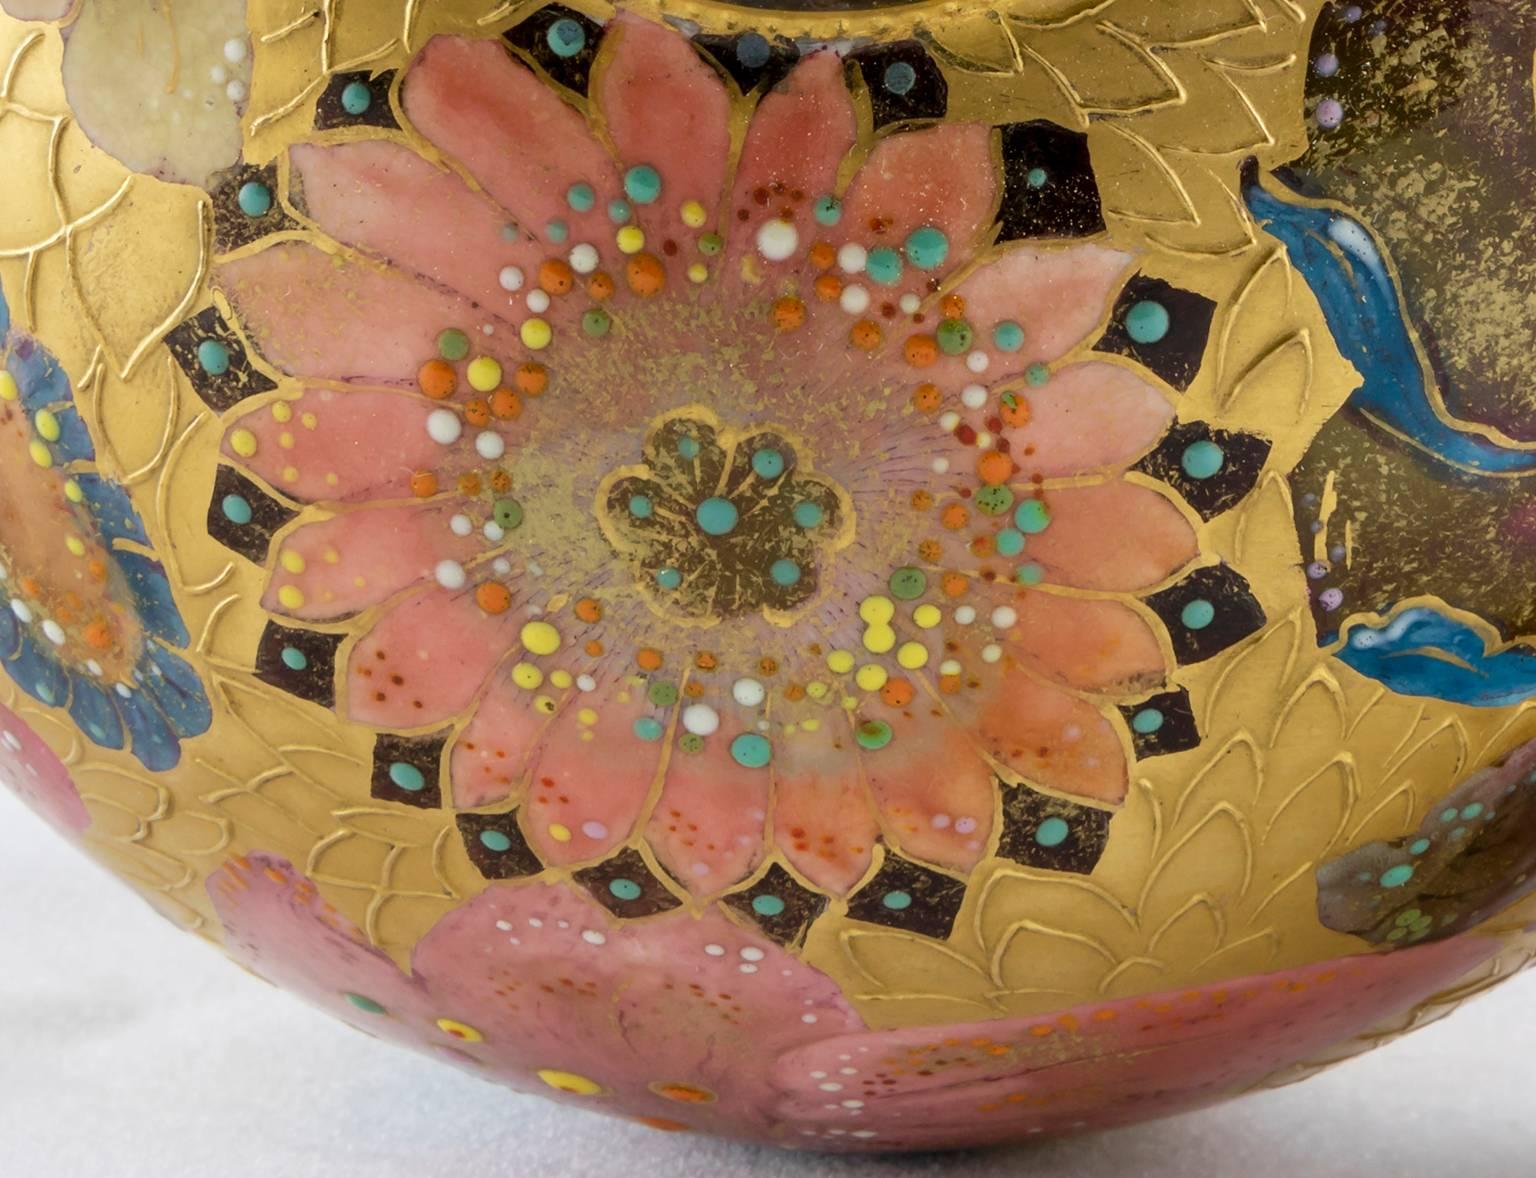 Aesthetic Movement 19th Century Porcelain Royal Crown Derby Gilded Age Pot Pourri